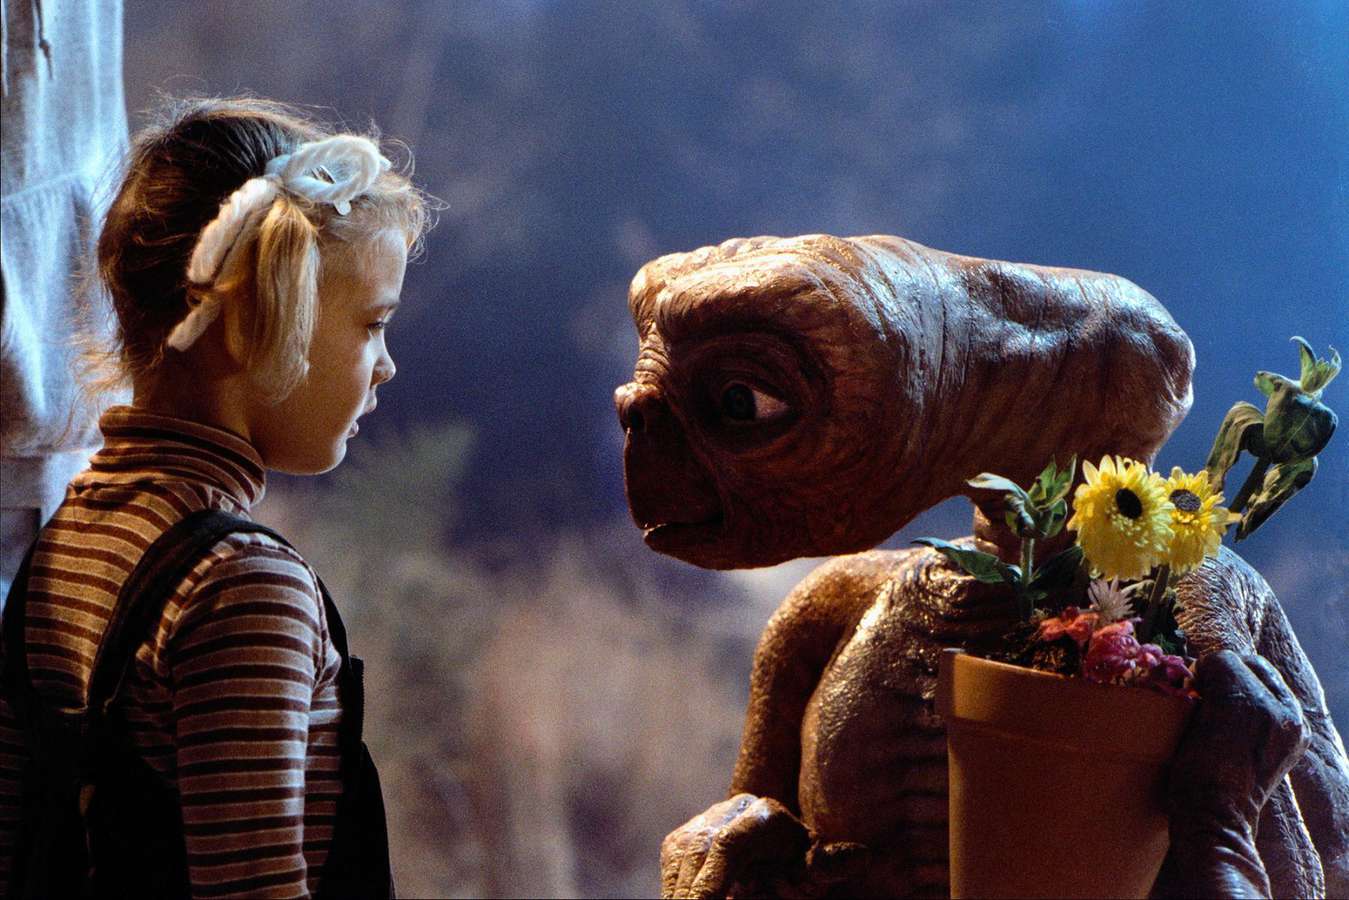 Muñeco original de E.T. el extraterrestre fue subastado por 2.6 mdd